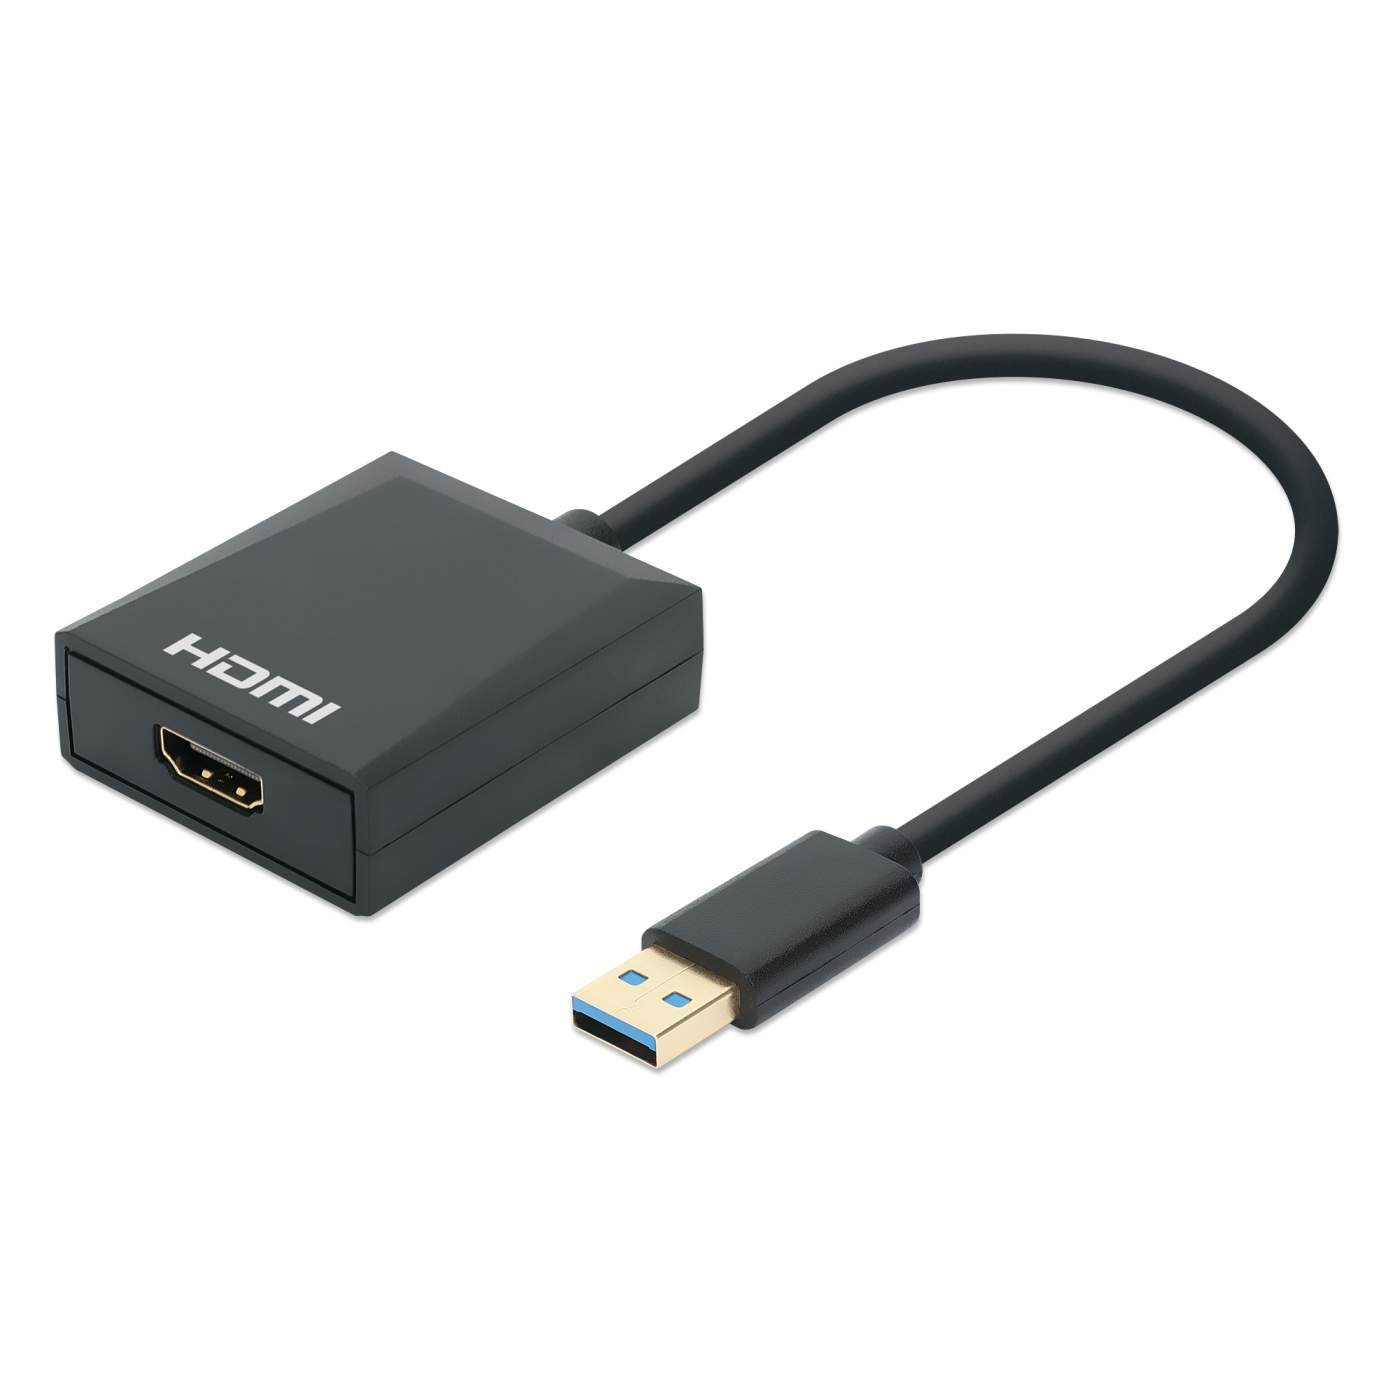 ADAPTADOR DE USB A HDMI MANHATTAN FULL HD, COLOR NEGRO, ICI151061 – PVL  Tienda Virtual